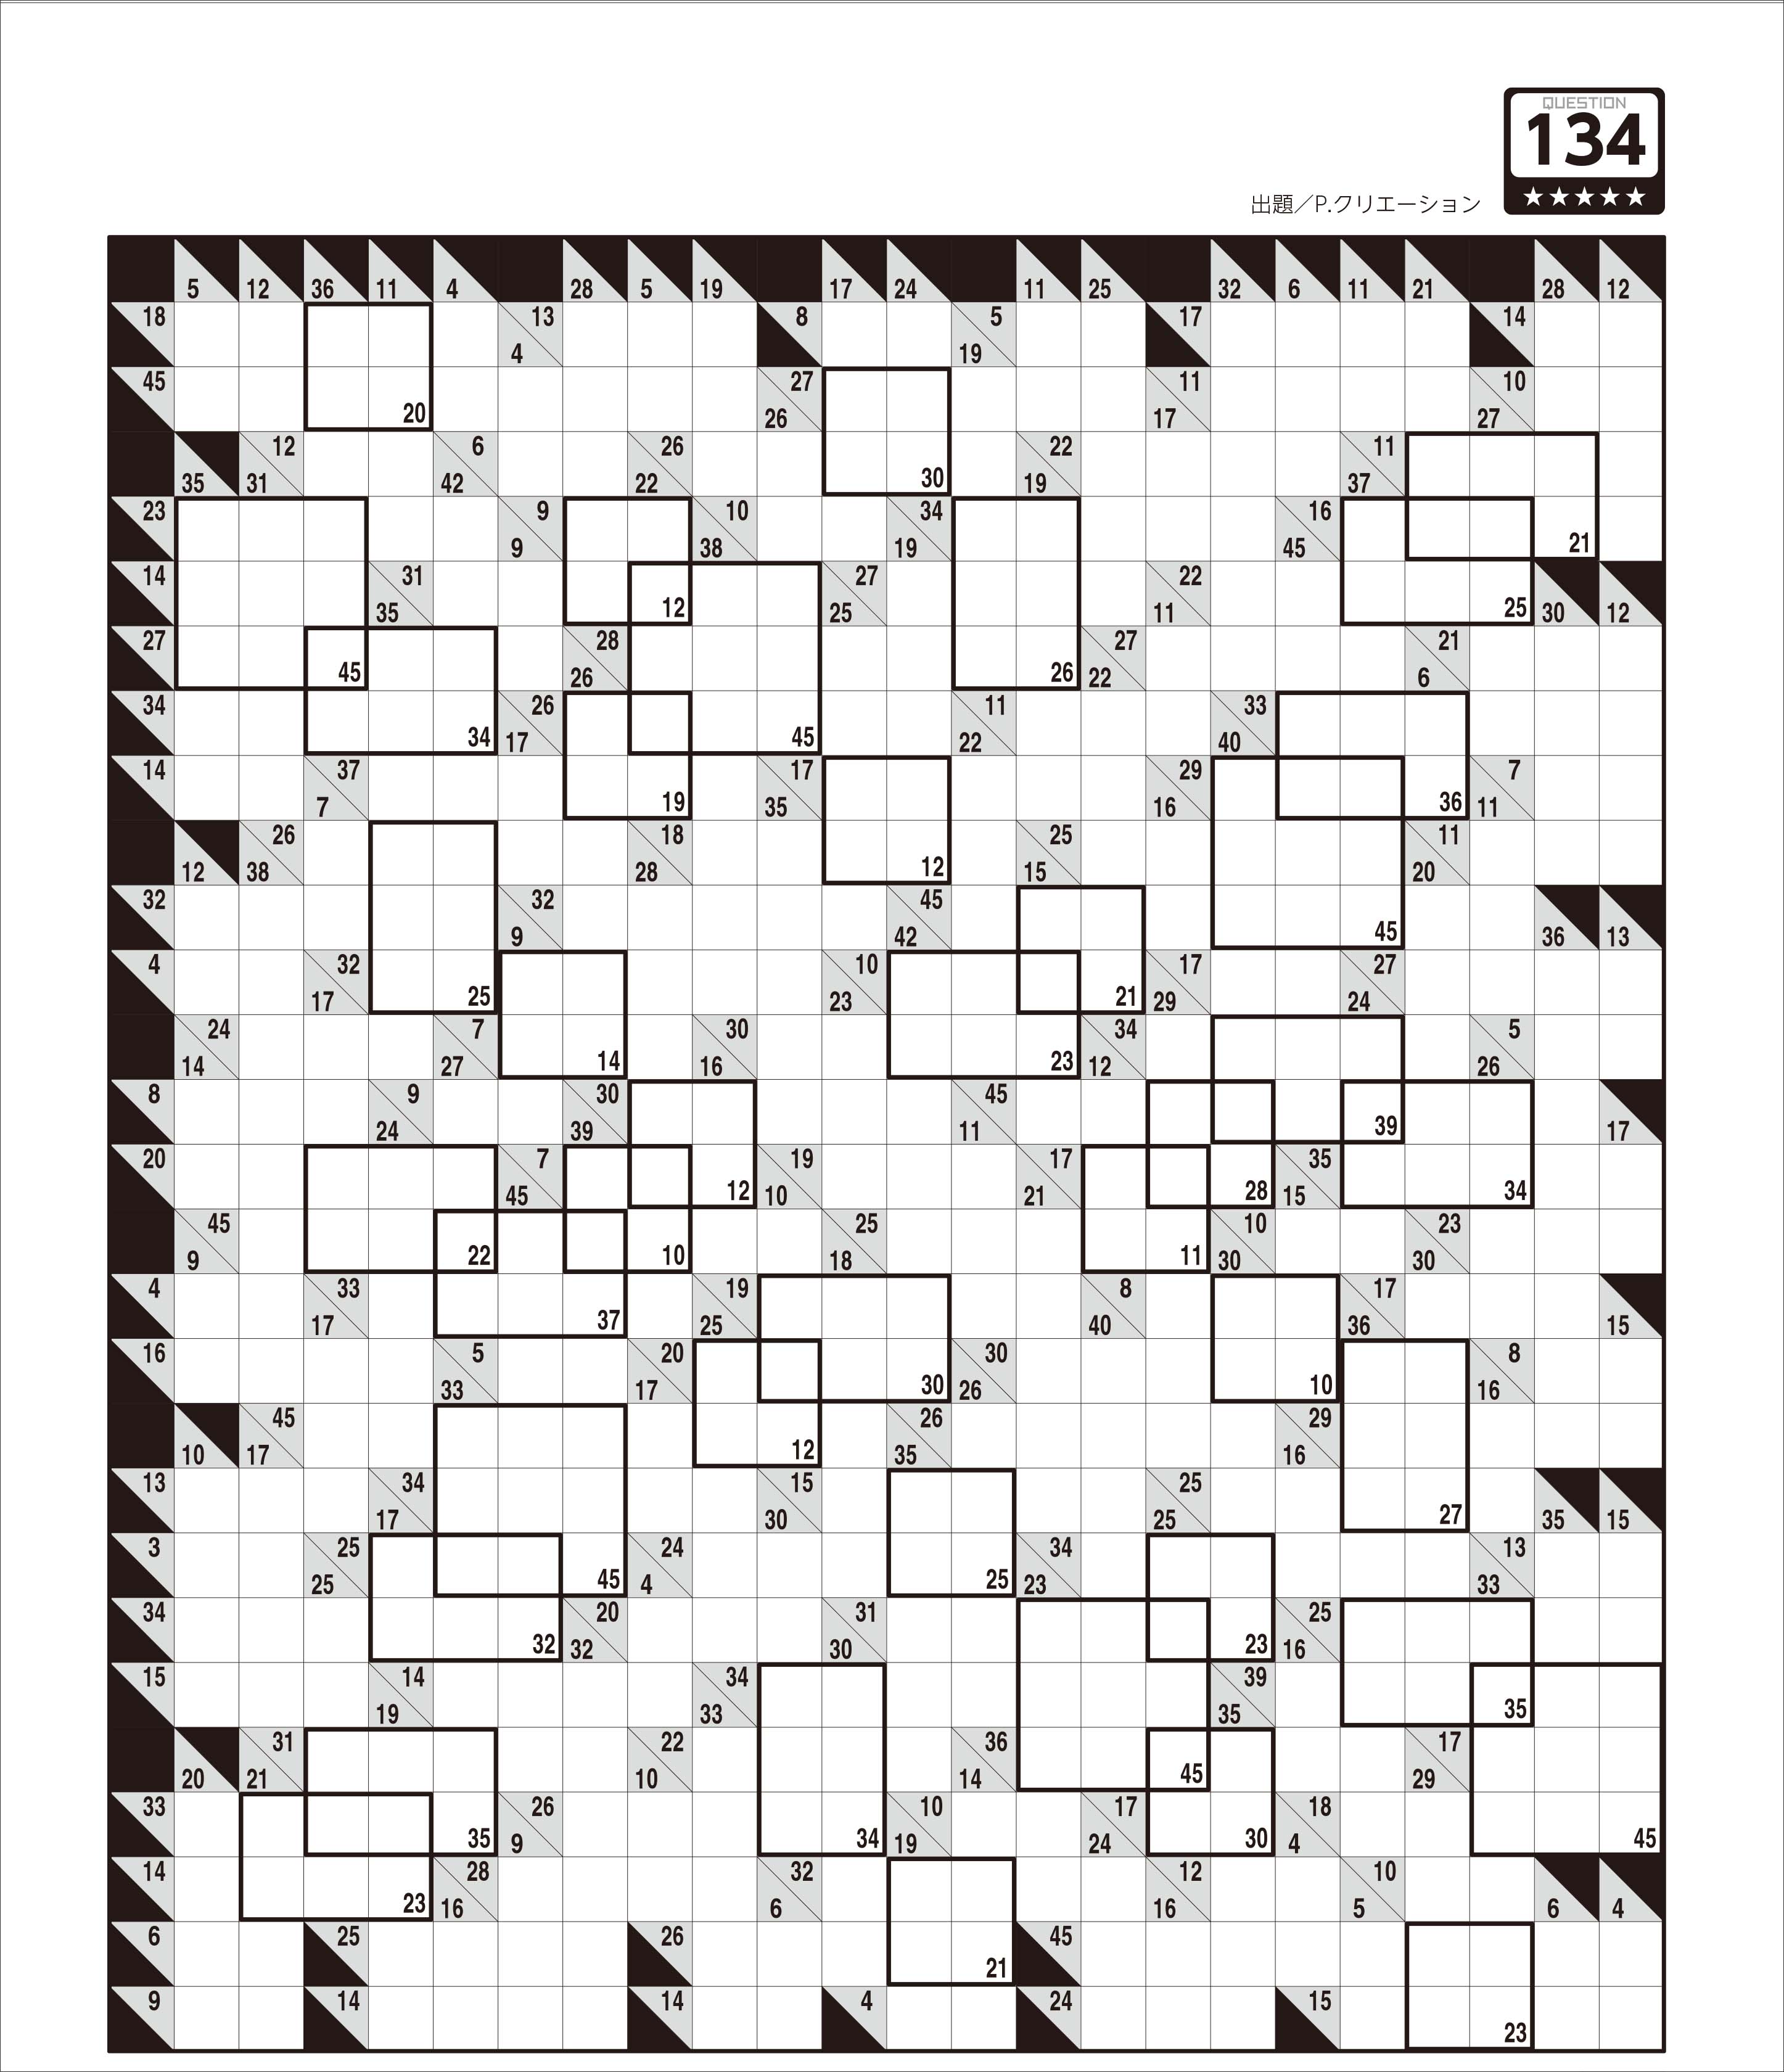 「ブロック足し算クロス」は、斜線のマスの数字をヒントに空白のマスに数字を埋めていくパズル　誌面